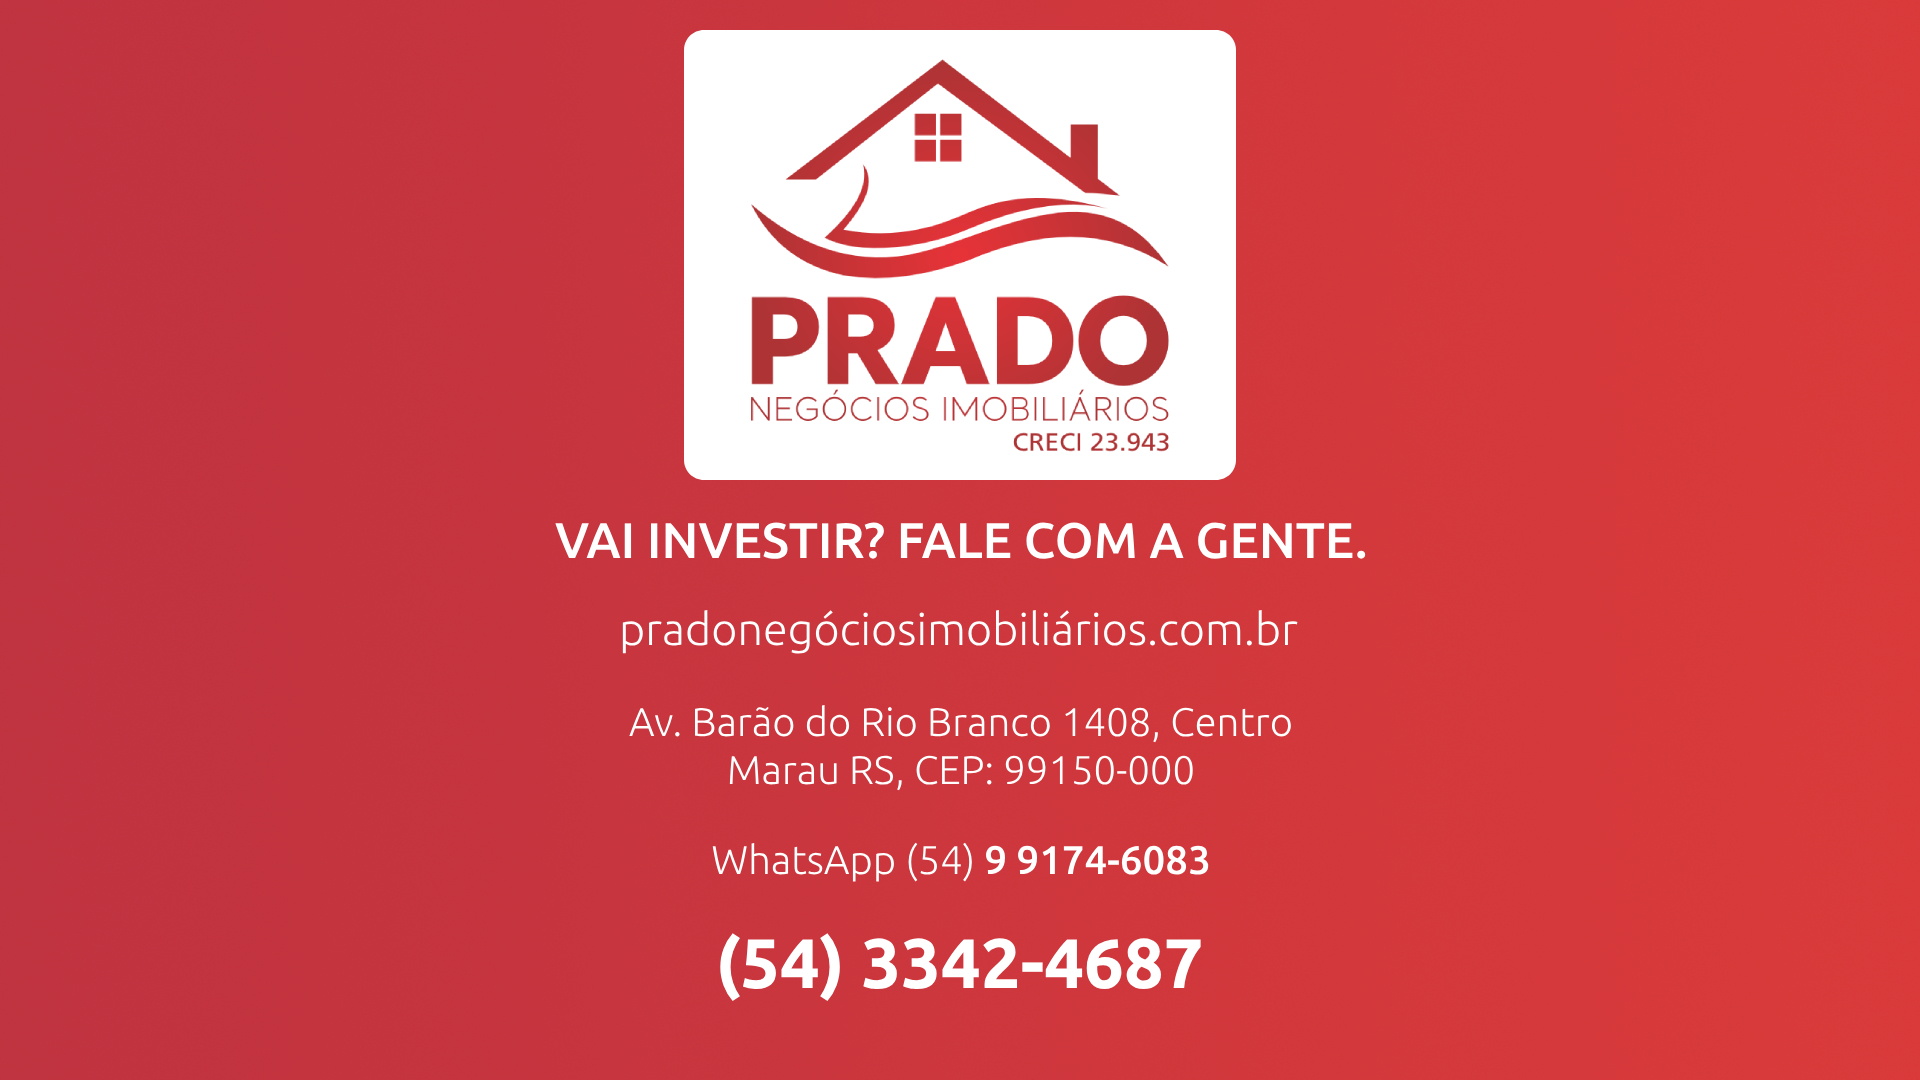 Prado Negócios Imobiliários